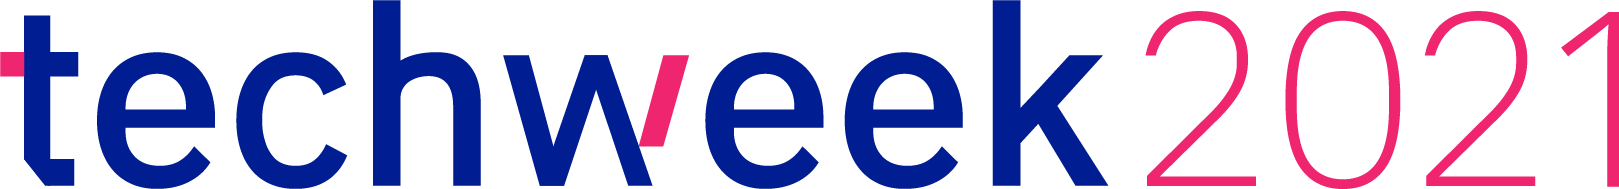 techweek2021 logo